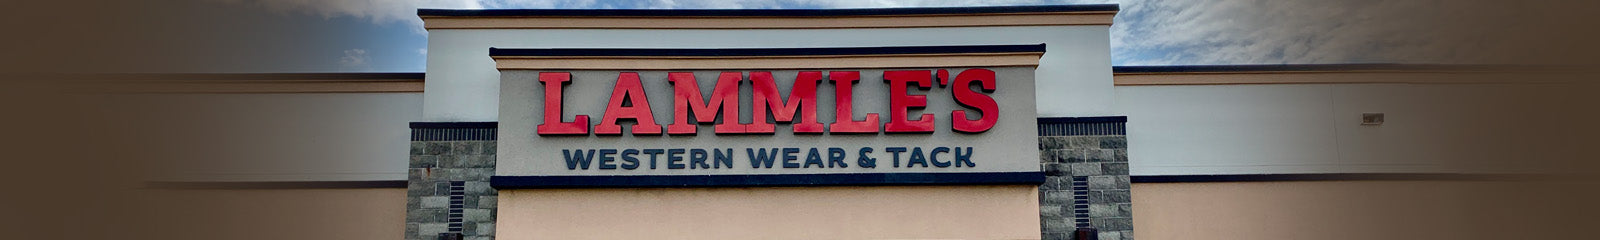 Our Story – Lammle's Western Wear